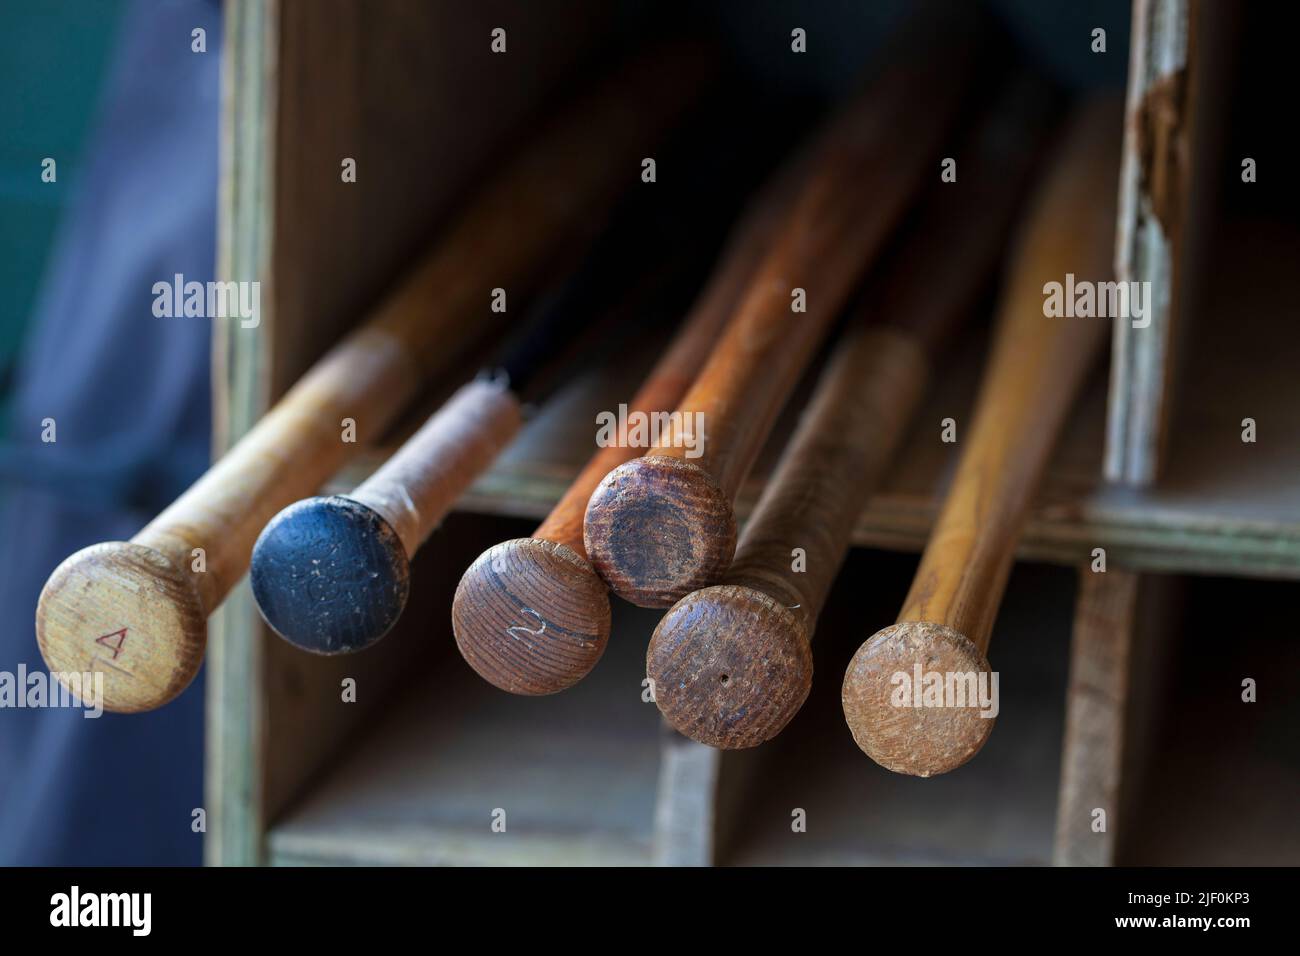 Old wood baseball bats in a bat storage rack at a baseball park Stock Photo